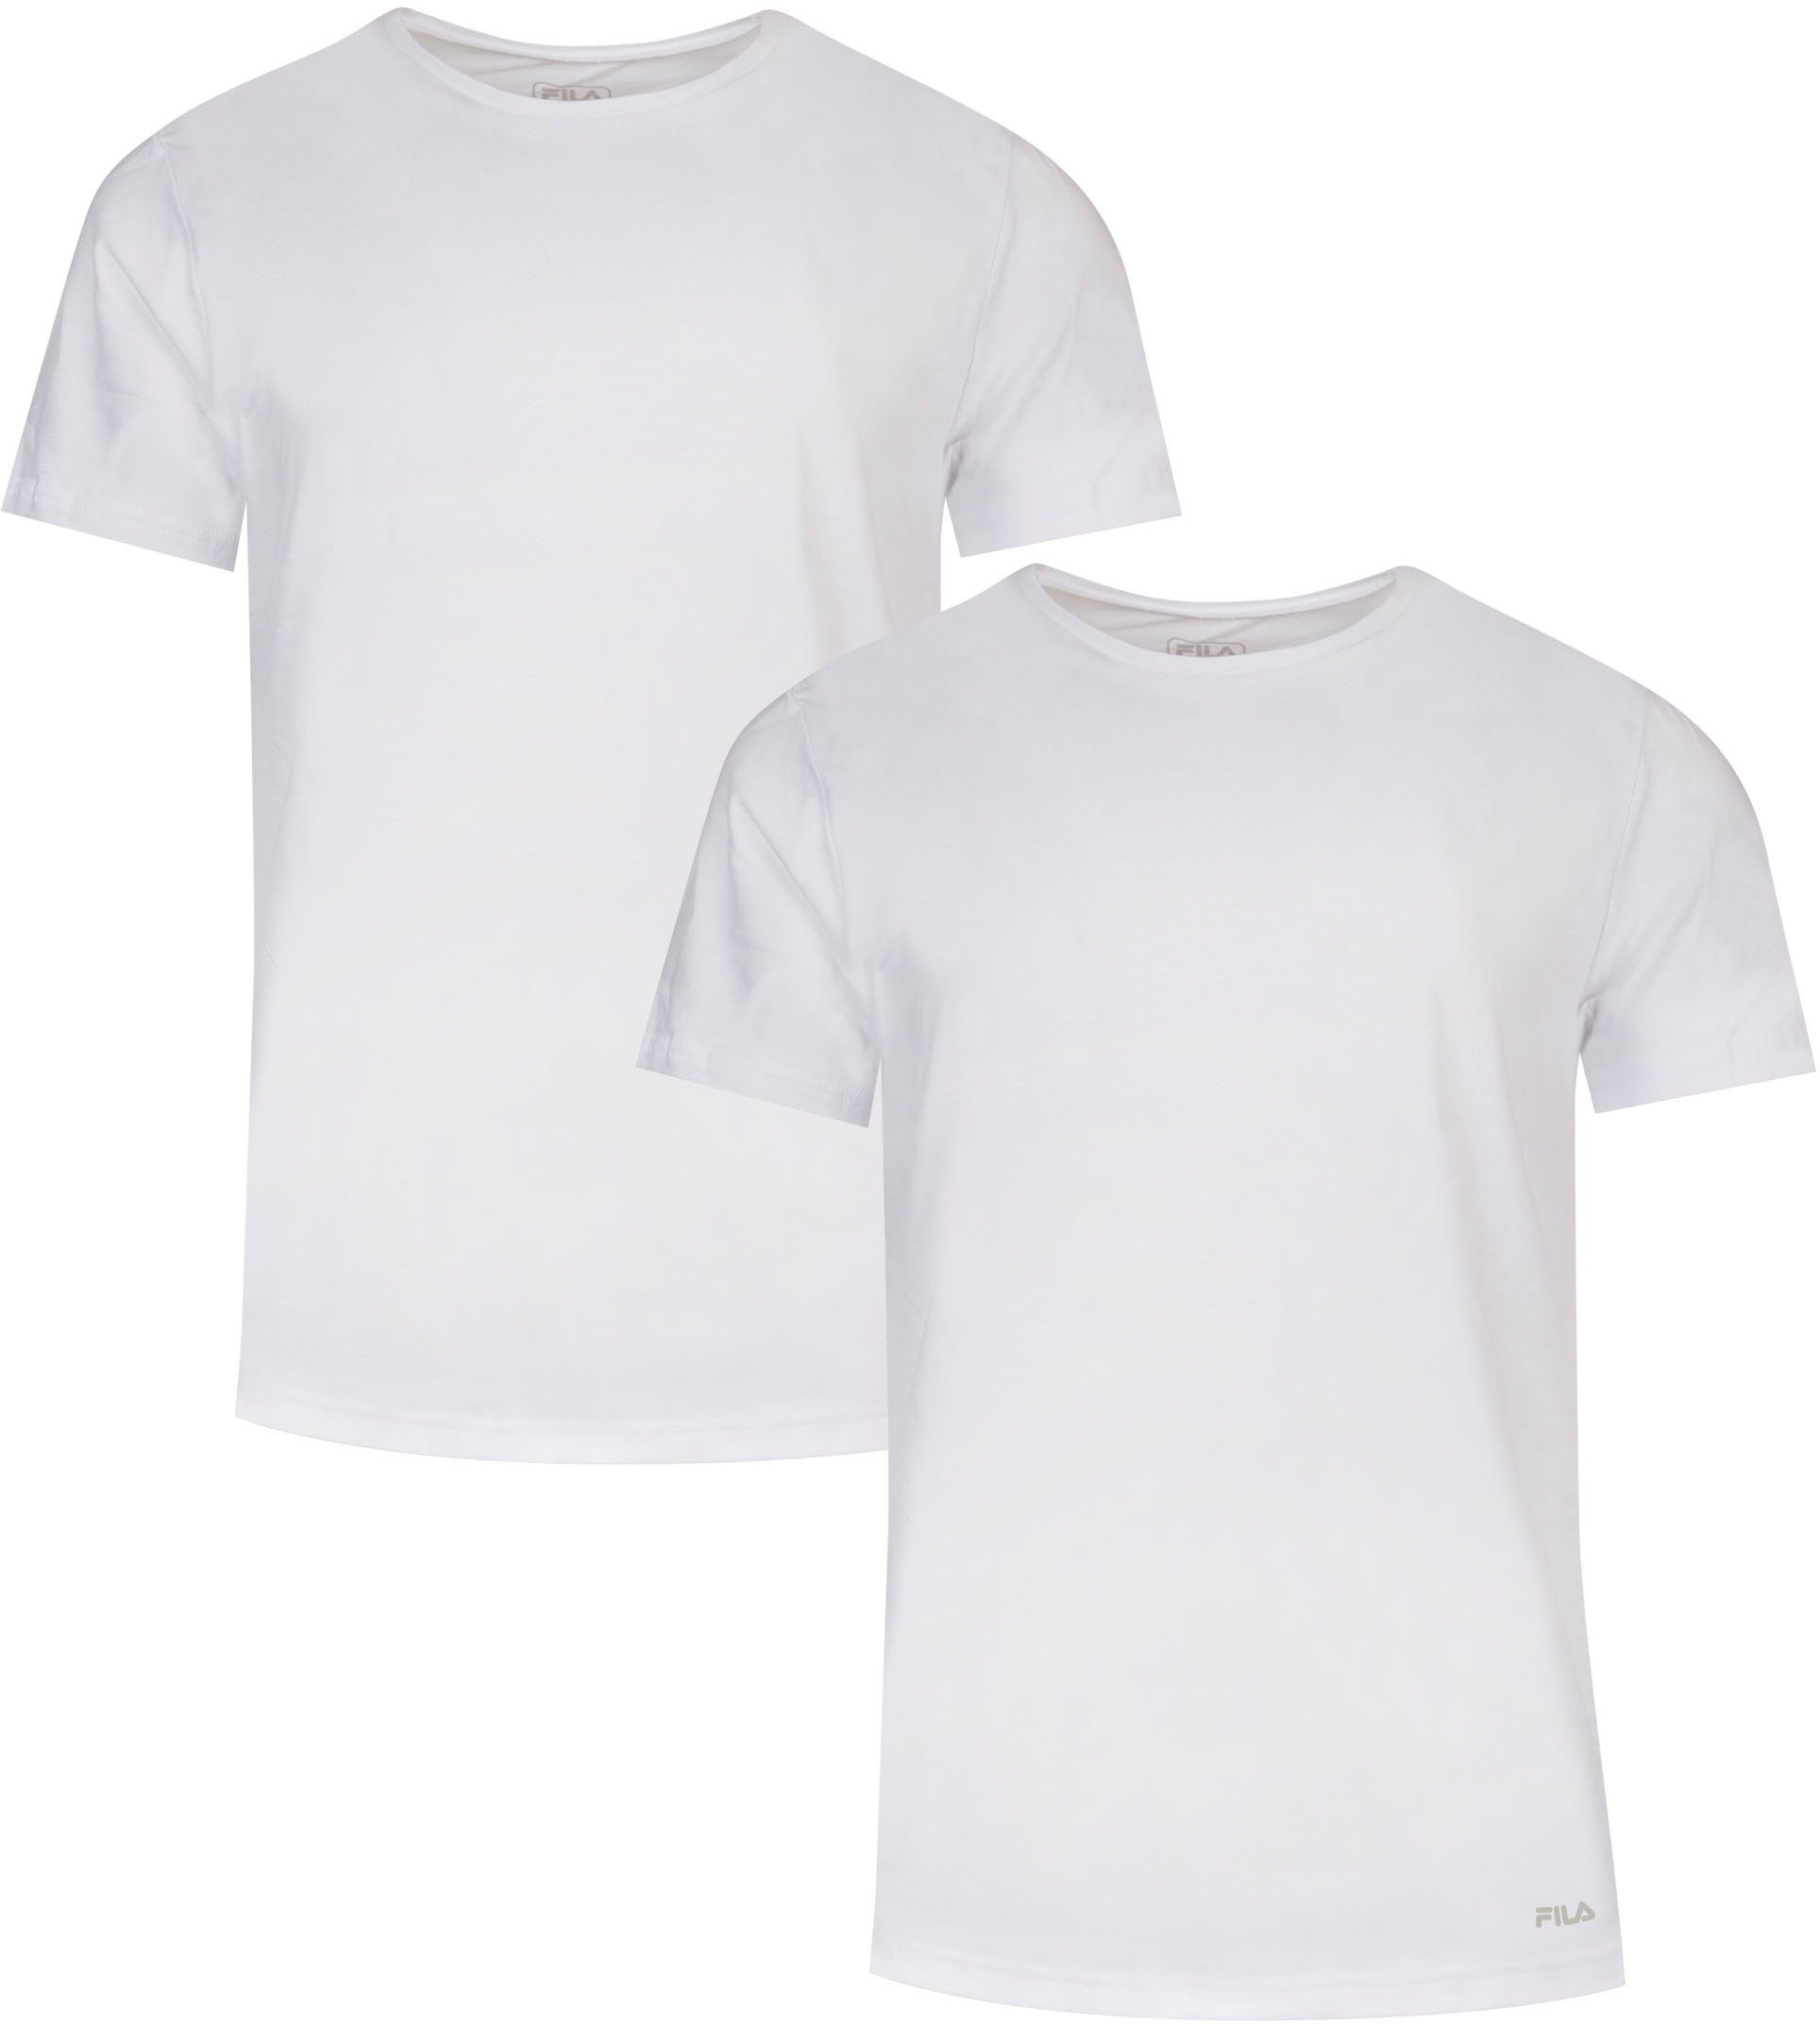 Fila T-Shirt mit klassischem Rundhalsausschnitt und Kurzarm